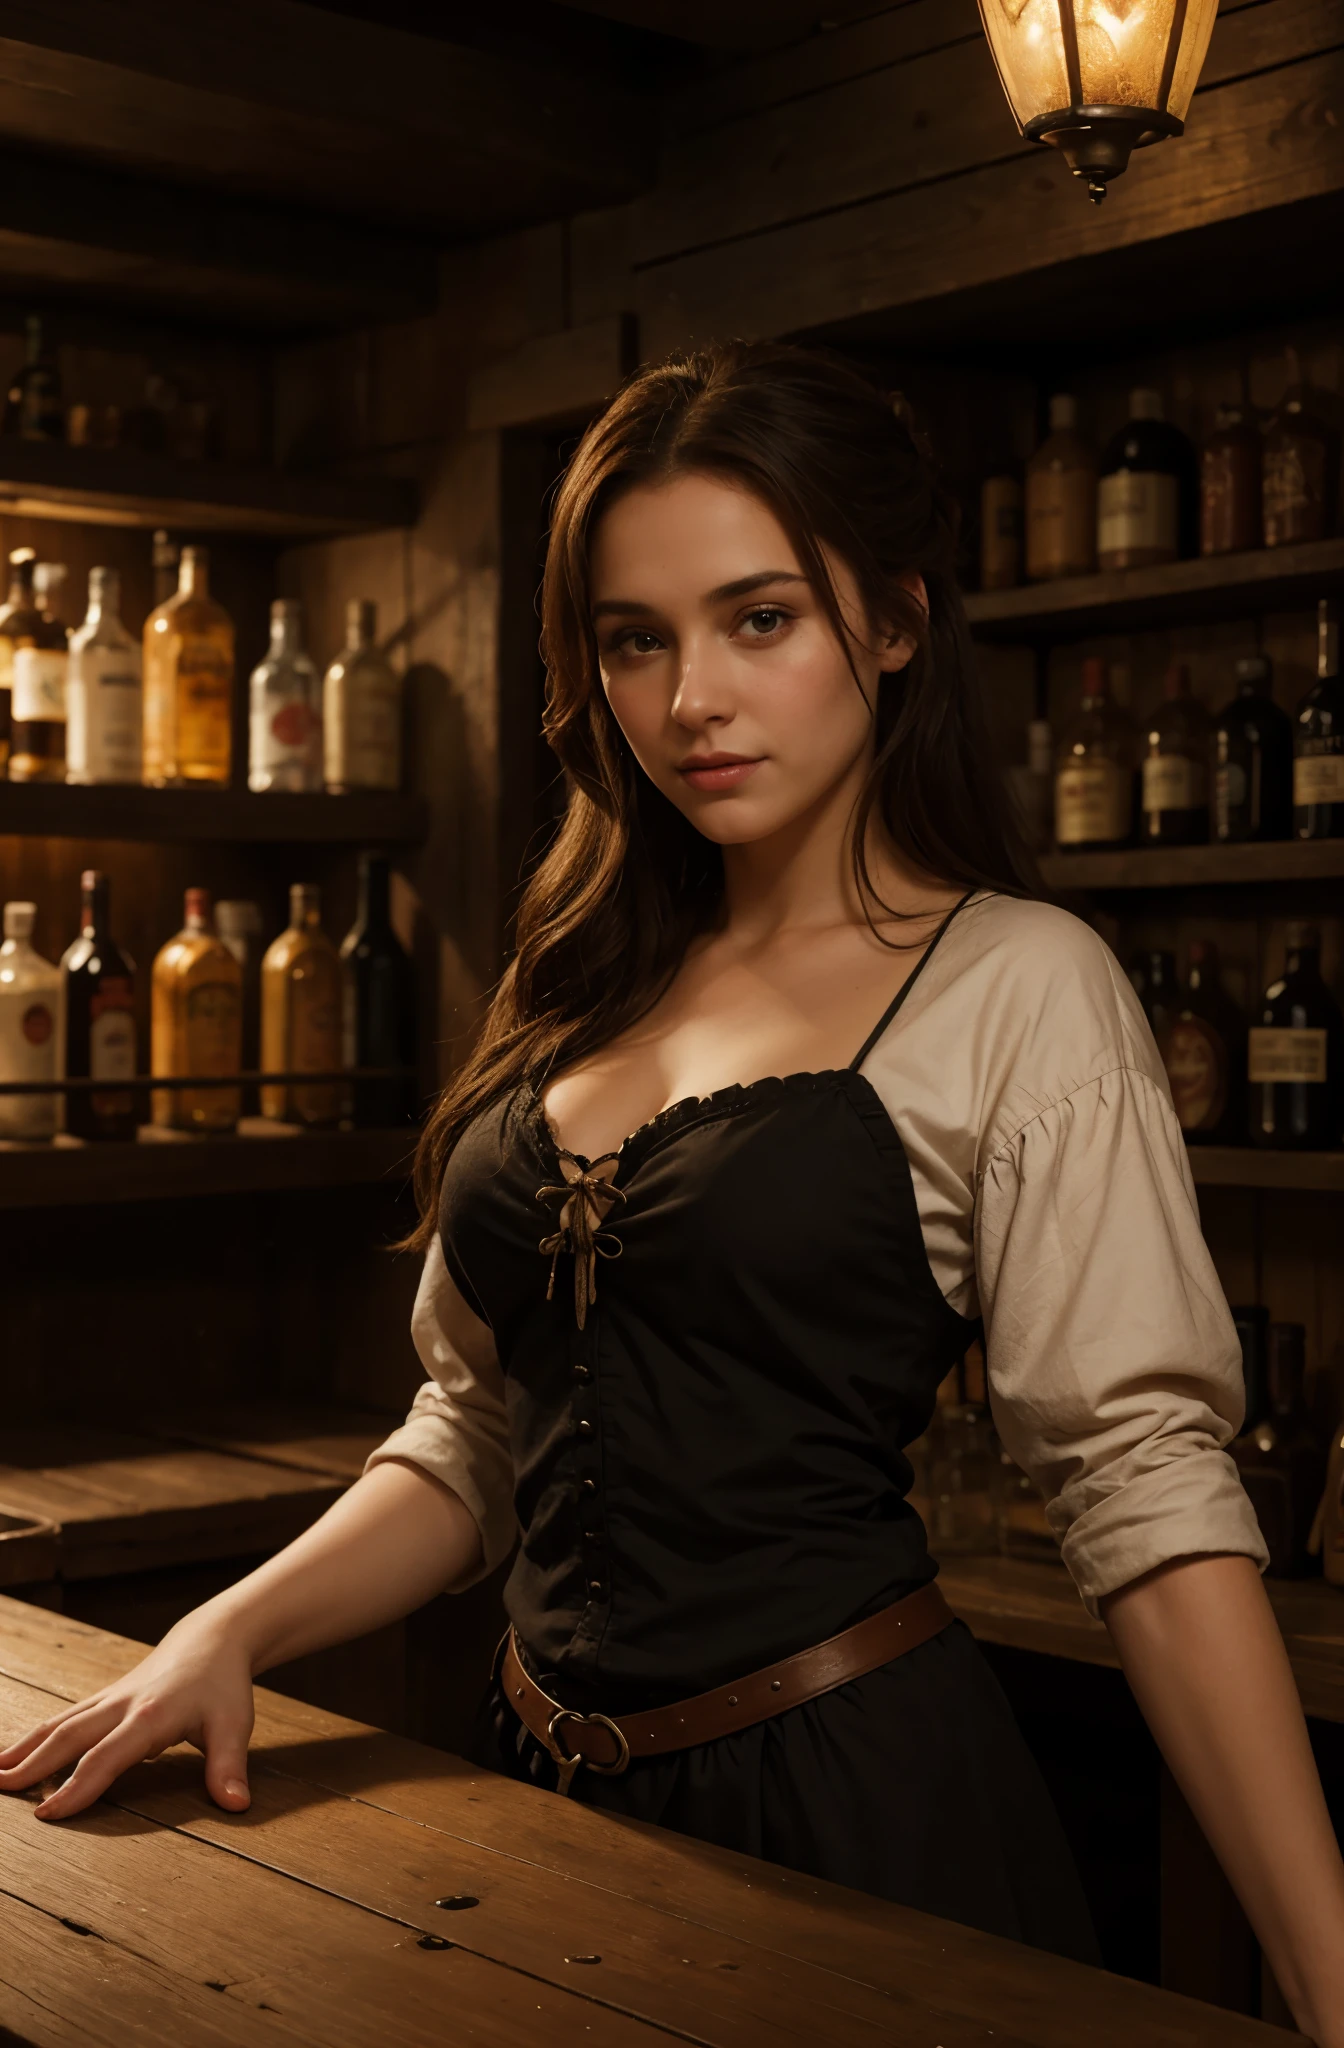 A 4K picture of a female bartender في حانة, موضوع العصور الوسطى, في حانة, وجه رائع مذهل, مفصلة للغاية, الألوان الدافئة, تحفة, إضاءة منتشرة ناعمة